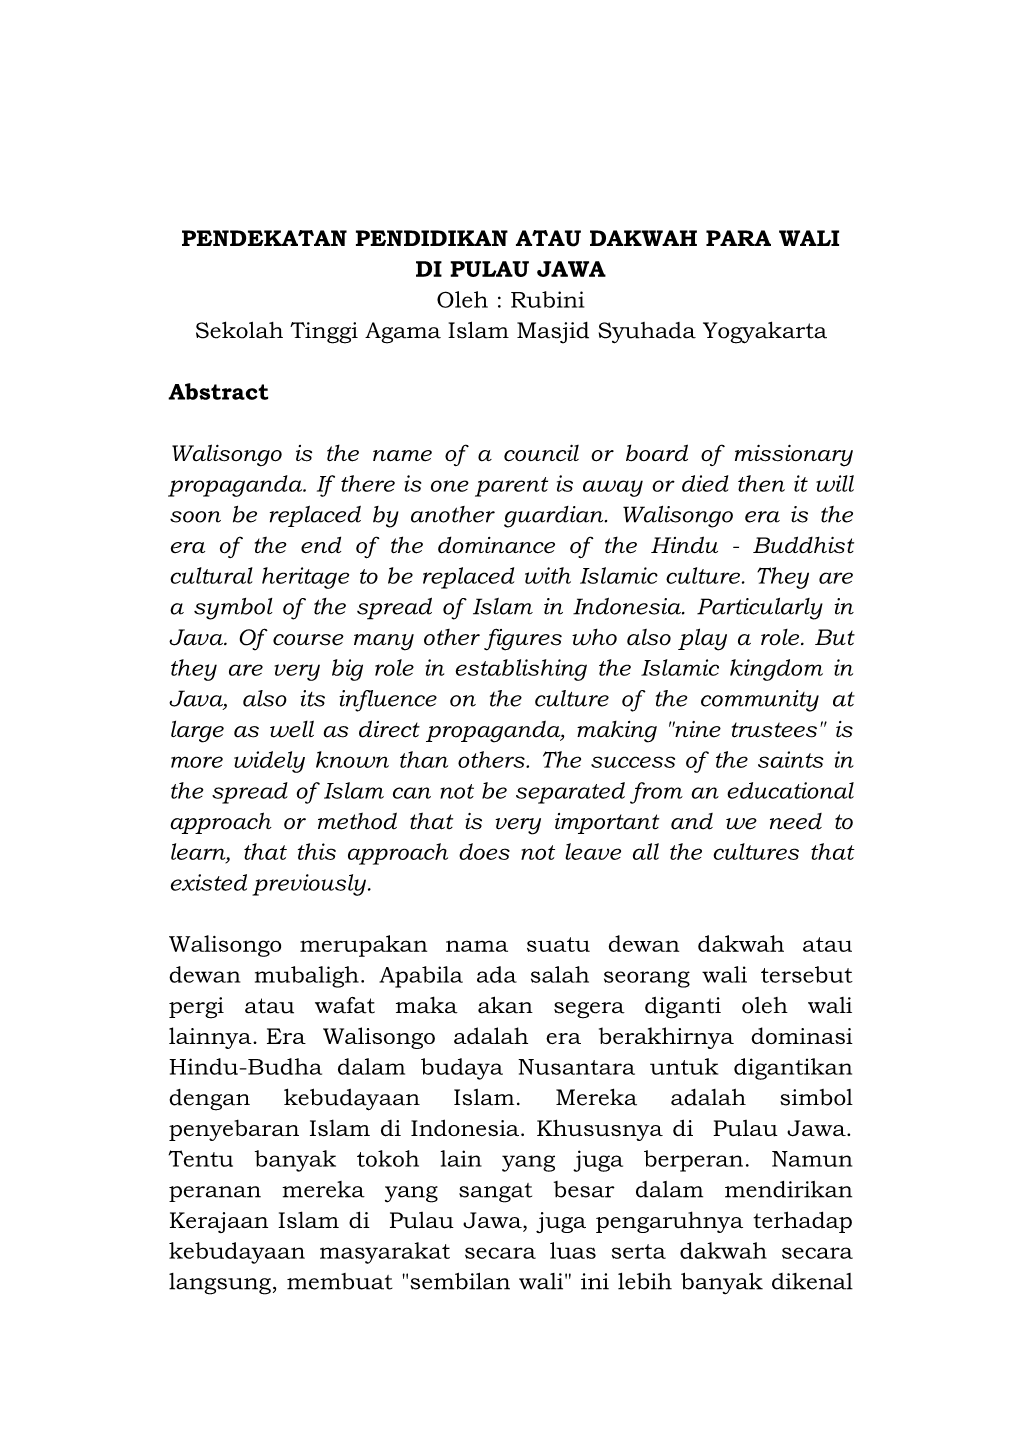 PENDEKATAN PENDIDIKAN ATAU DAKWAH PARA WALI DI PULAU JAWA Oleh : Rubini Sekolah Tinggi Agama Islam Masjid Syuhada Yogyakarta